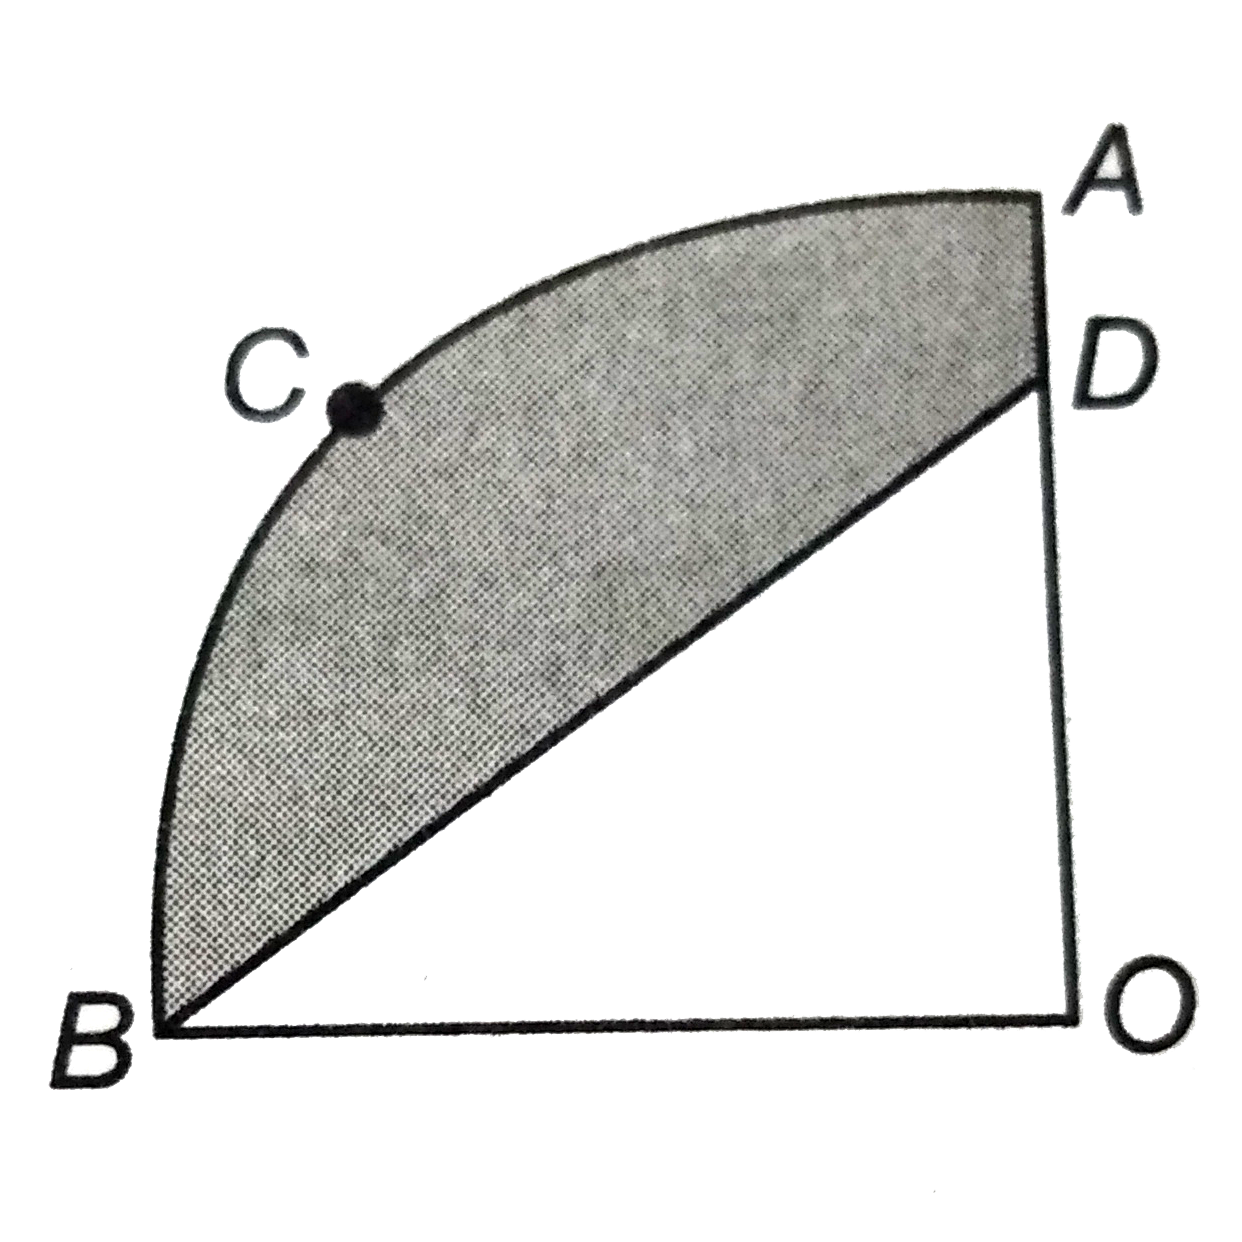 आकृति में , OACB  केंद्र O और त्रिज्या 3.5 सेमी वाले  एक वृत्त  का चतुर्थांश है । यदि OD = 2   सेमी है , तो  निम्नलिखित के क्षेत्रफल  ज्ञात कीजिए  :     (i) चतुर्थांश OACB   (ii)   छायांकित  भाग ।